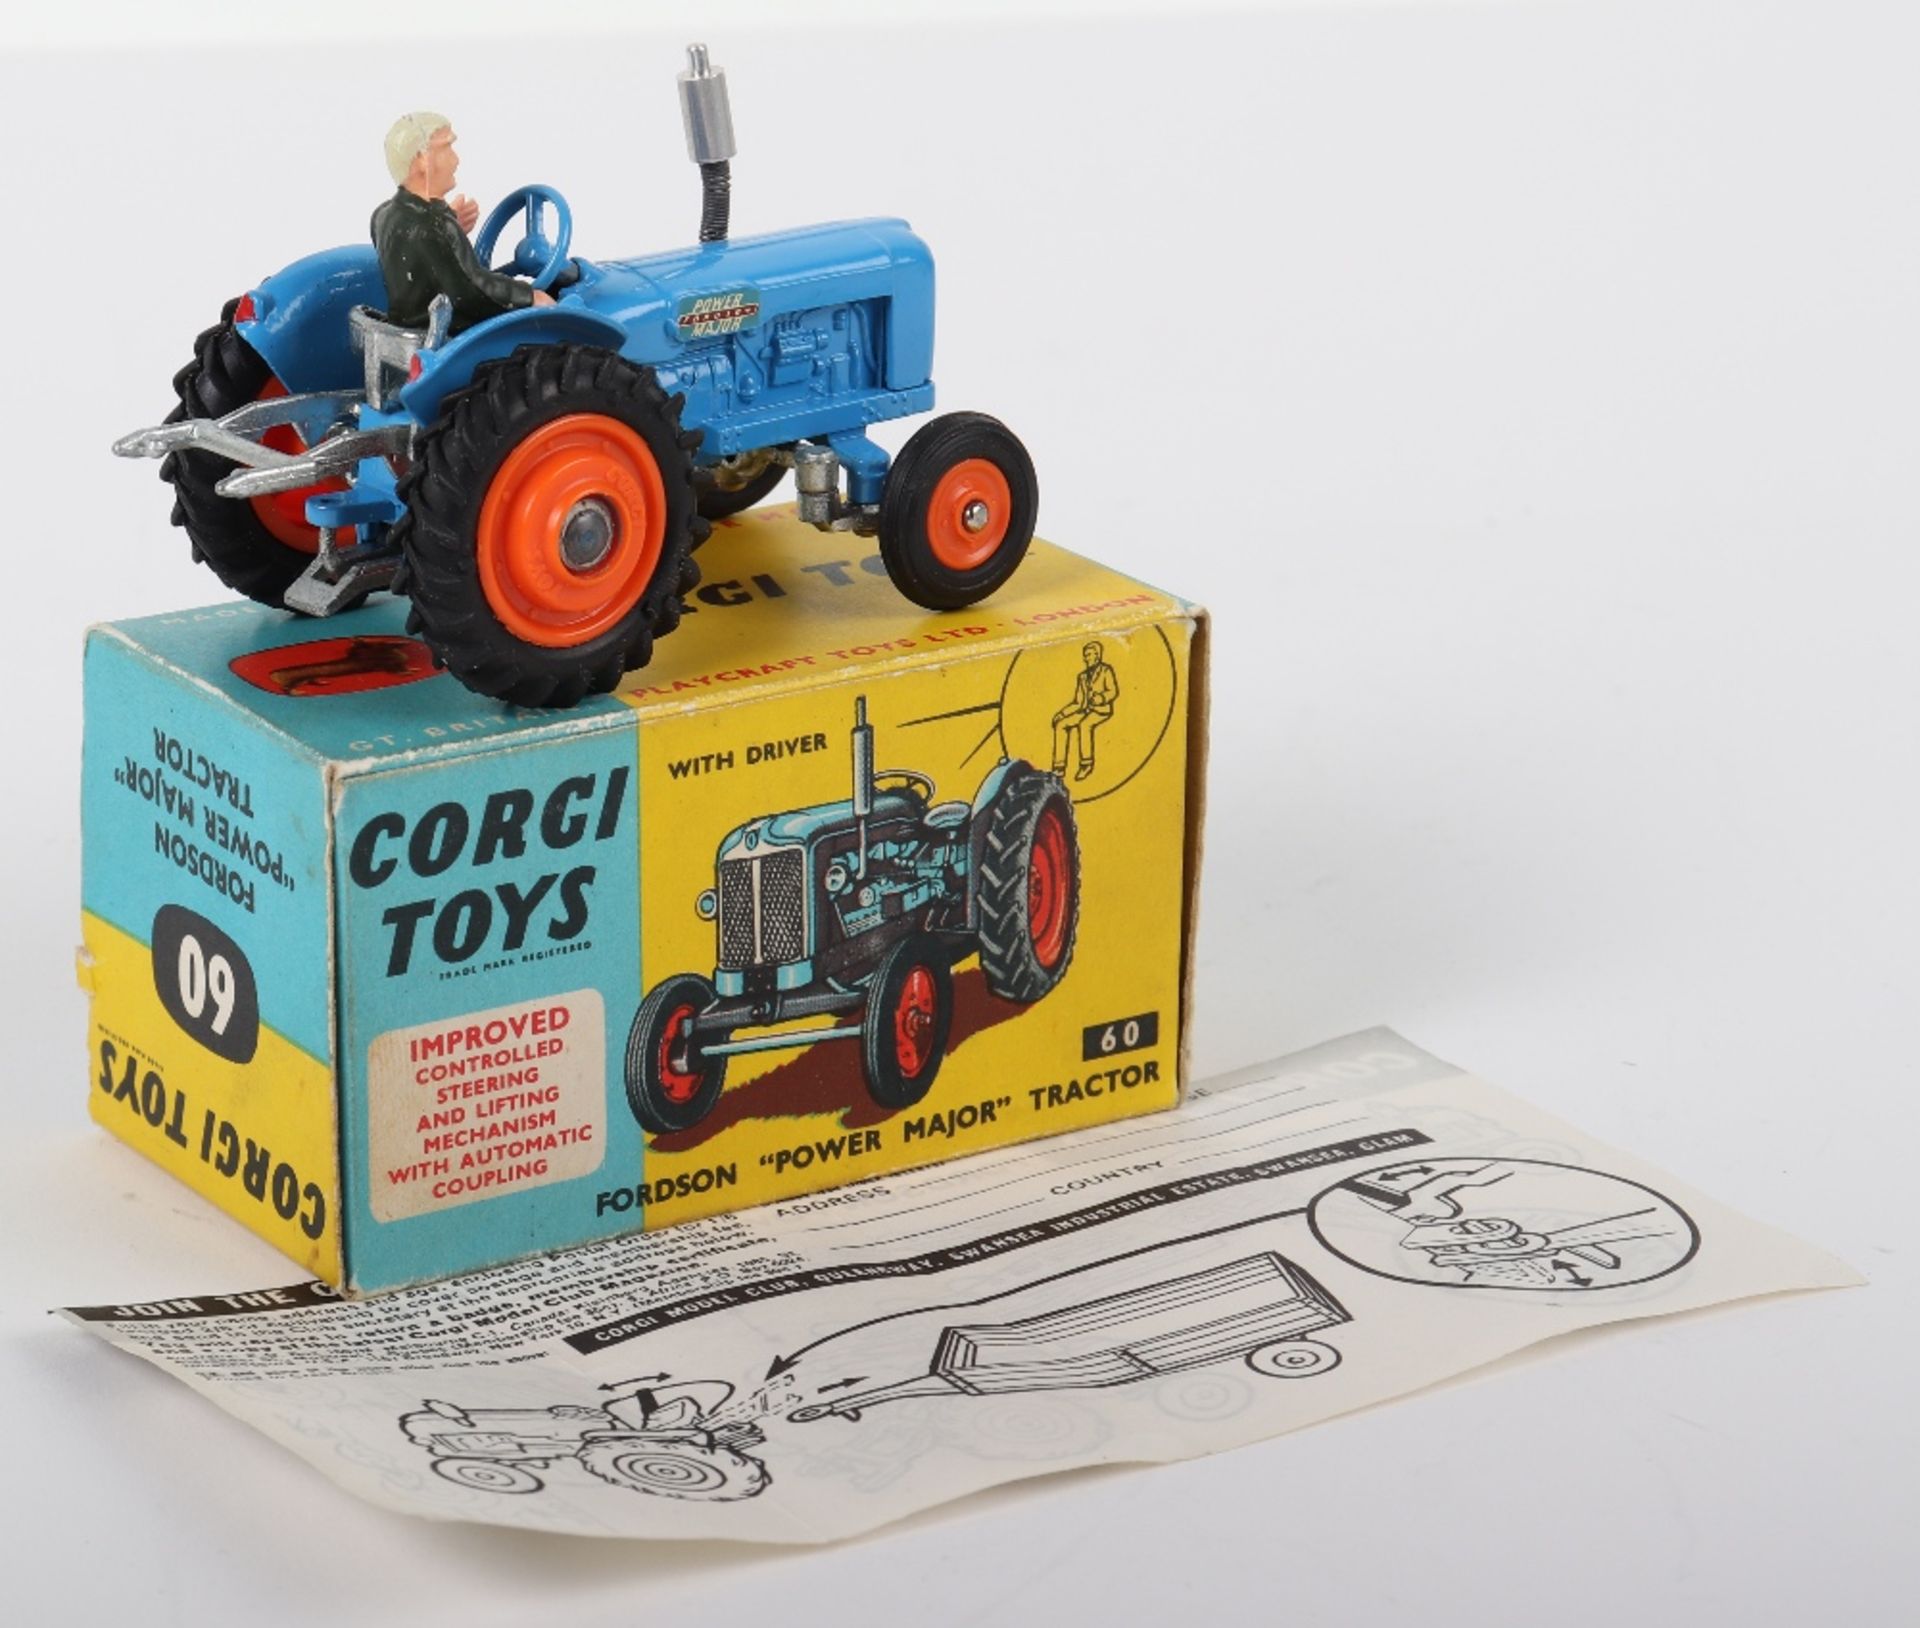 Boxed Corgi Toys 60 Fordson “Power Major” Tractor - Bild 3 aus 3